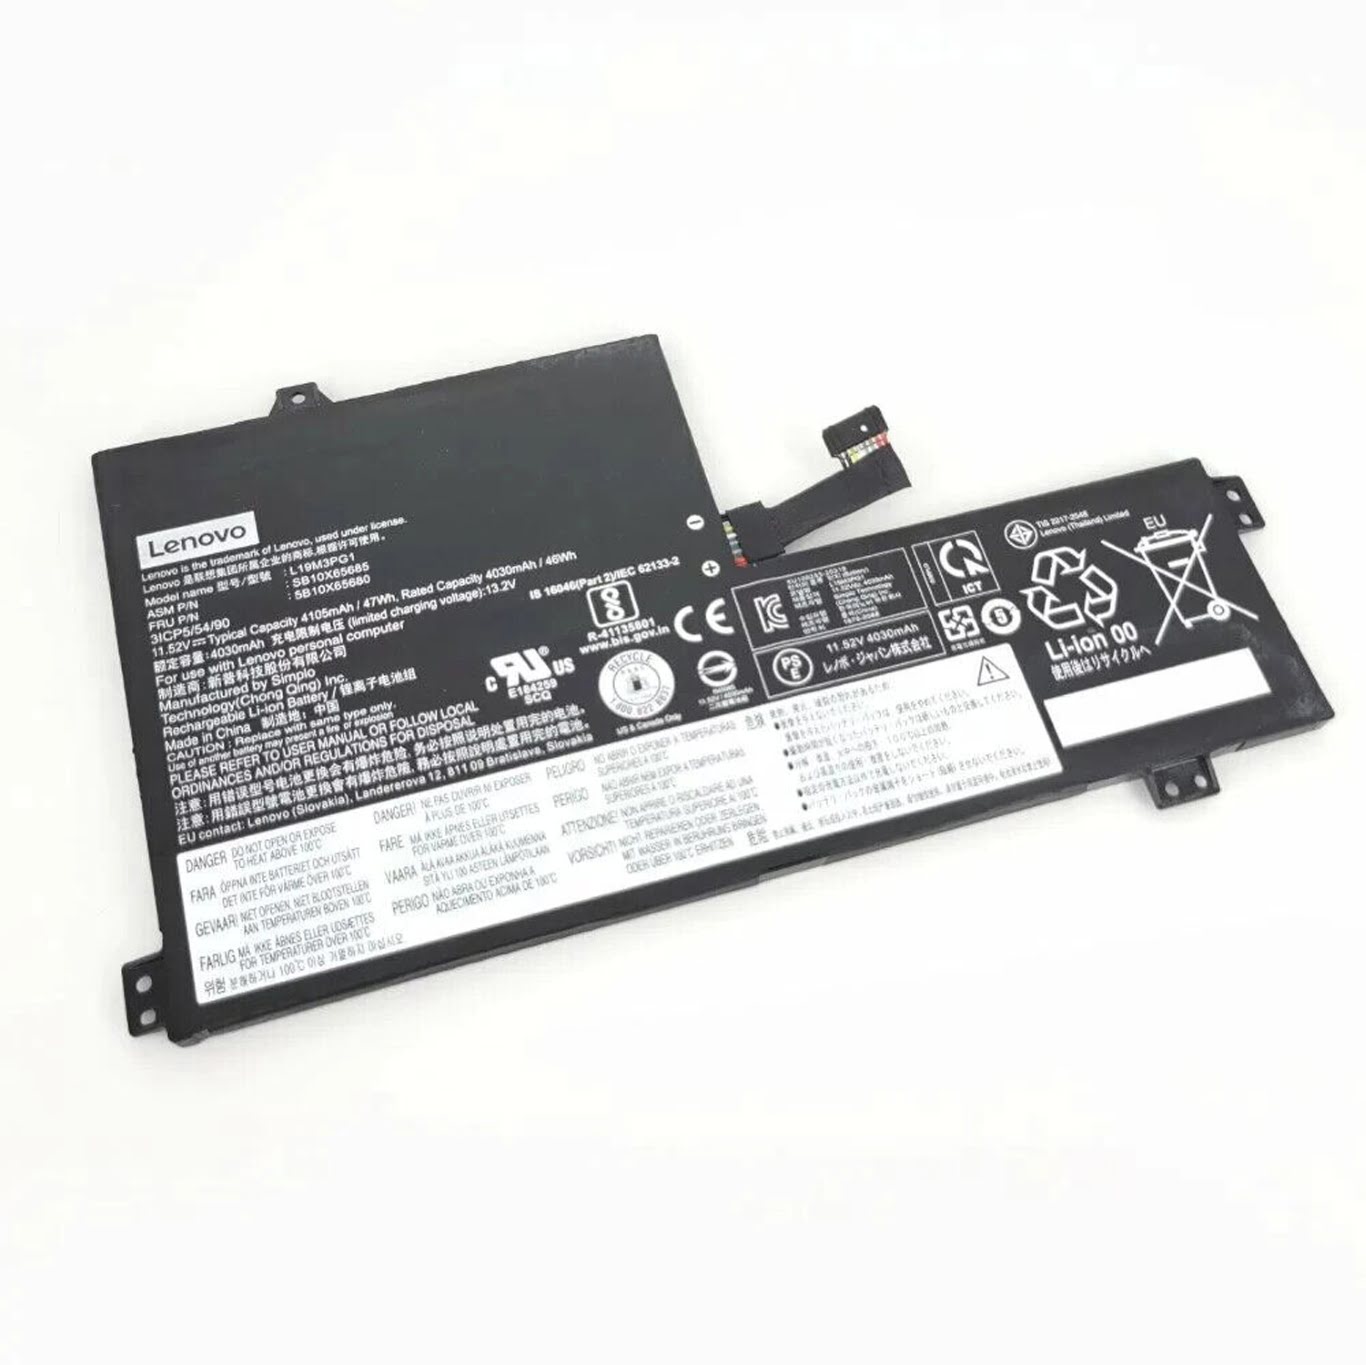 Lenovo L19c3pg1, Sb10x65681 Laptop Akku Fuer 100e Chromebook 2nd Gen Ast(82cd), 300e Chromebook 2nd Gen 82ce0000us ersatz